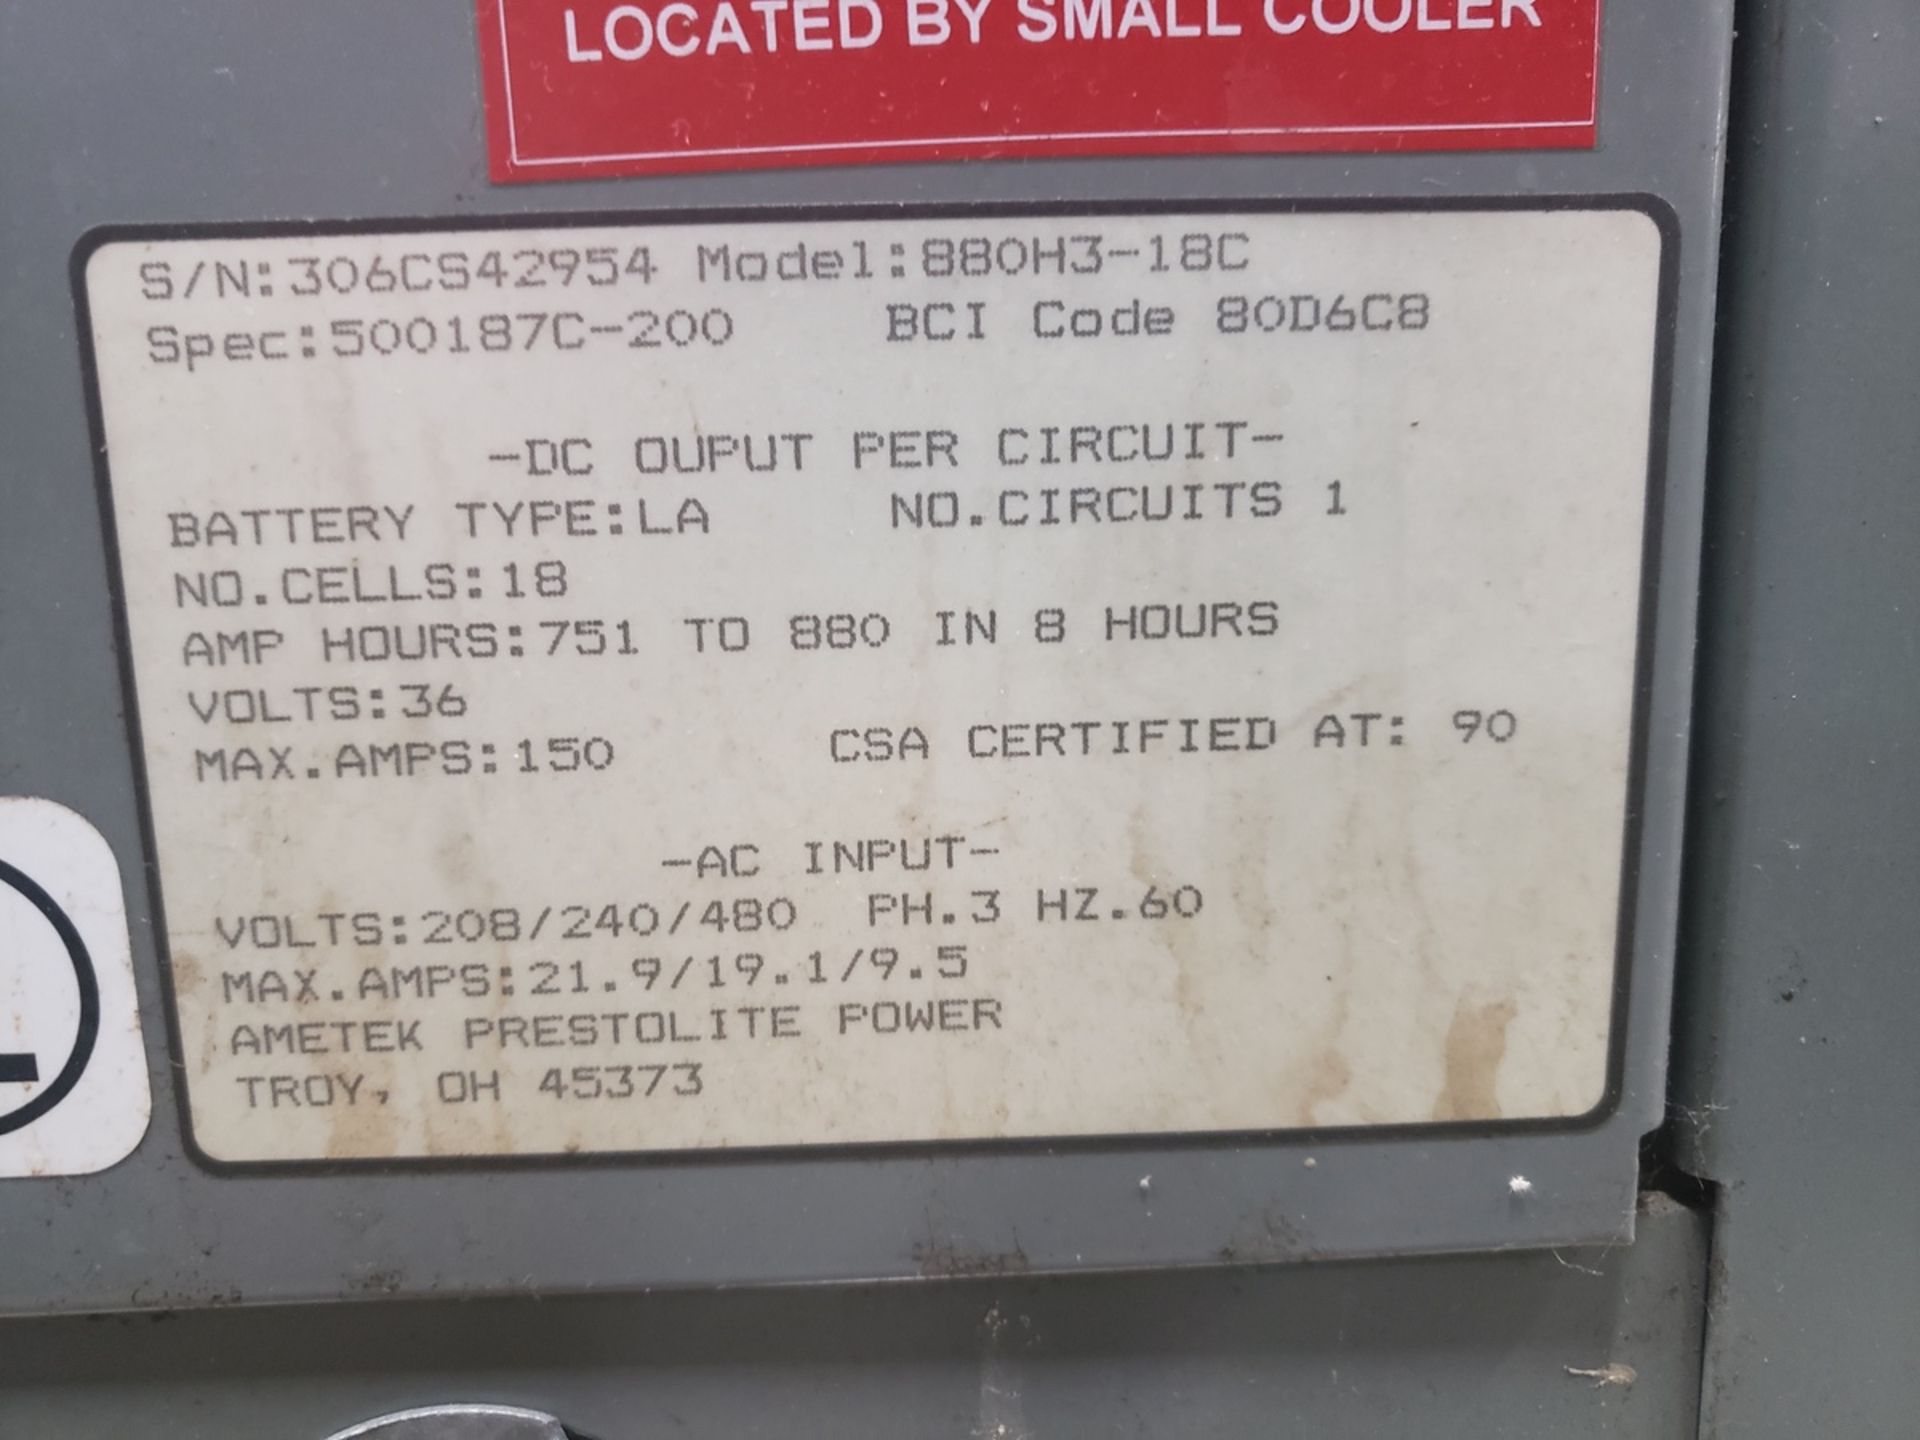 Ametek Prestlite Forklift Battery Charger, 36 Volt, M# 880H3-18C, S/N 306CS42954 | Rig Fee $150 - Image 2 of 2